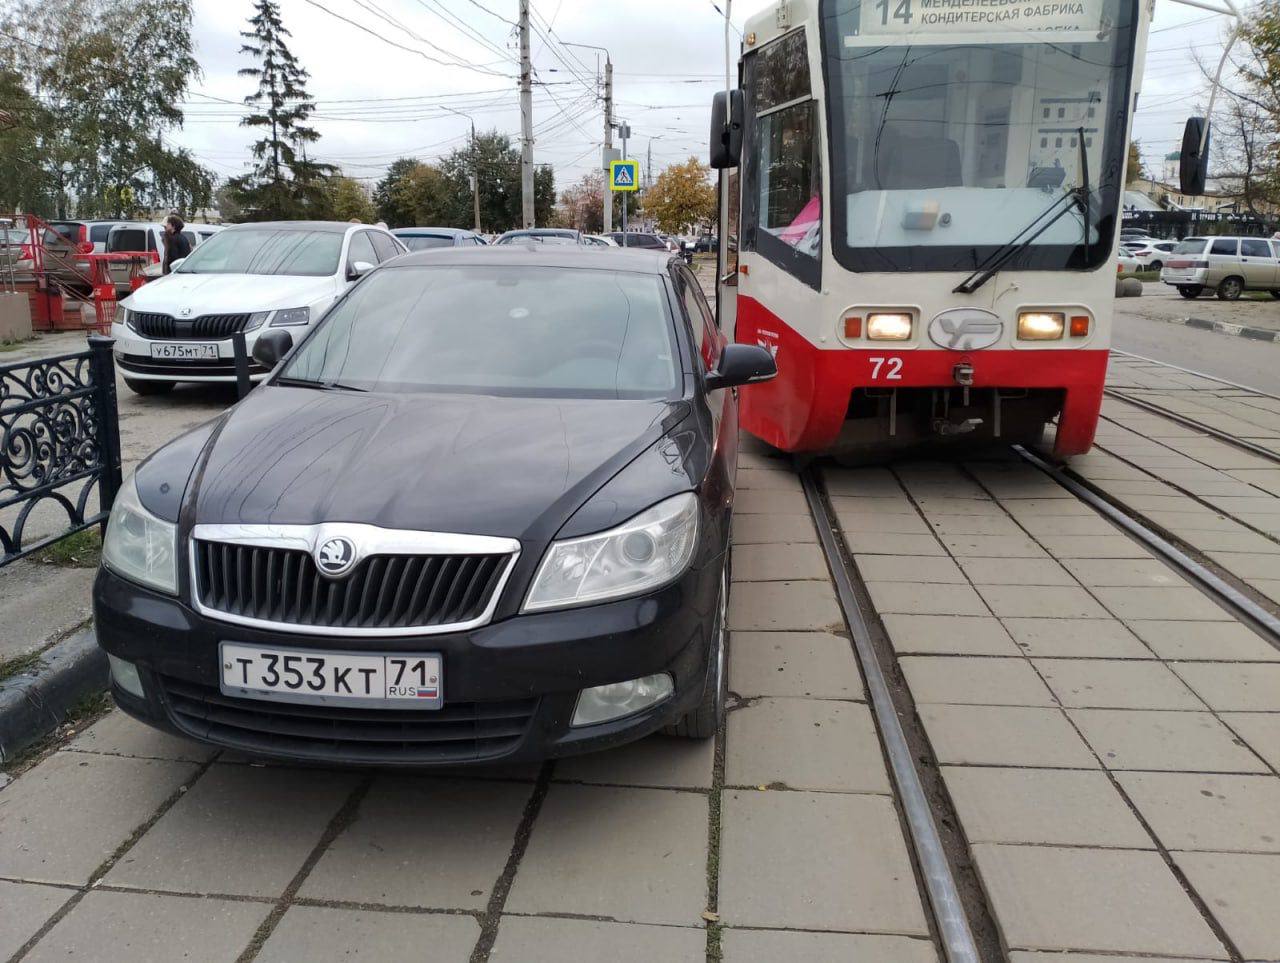 Припаркованная машина задержала движение трамваев на улице Коминтерна в Туле